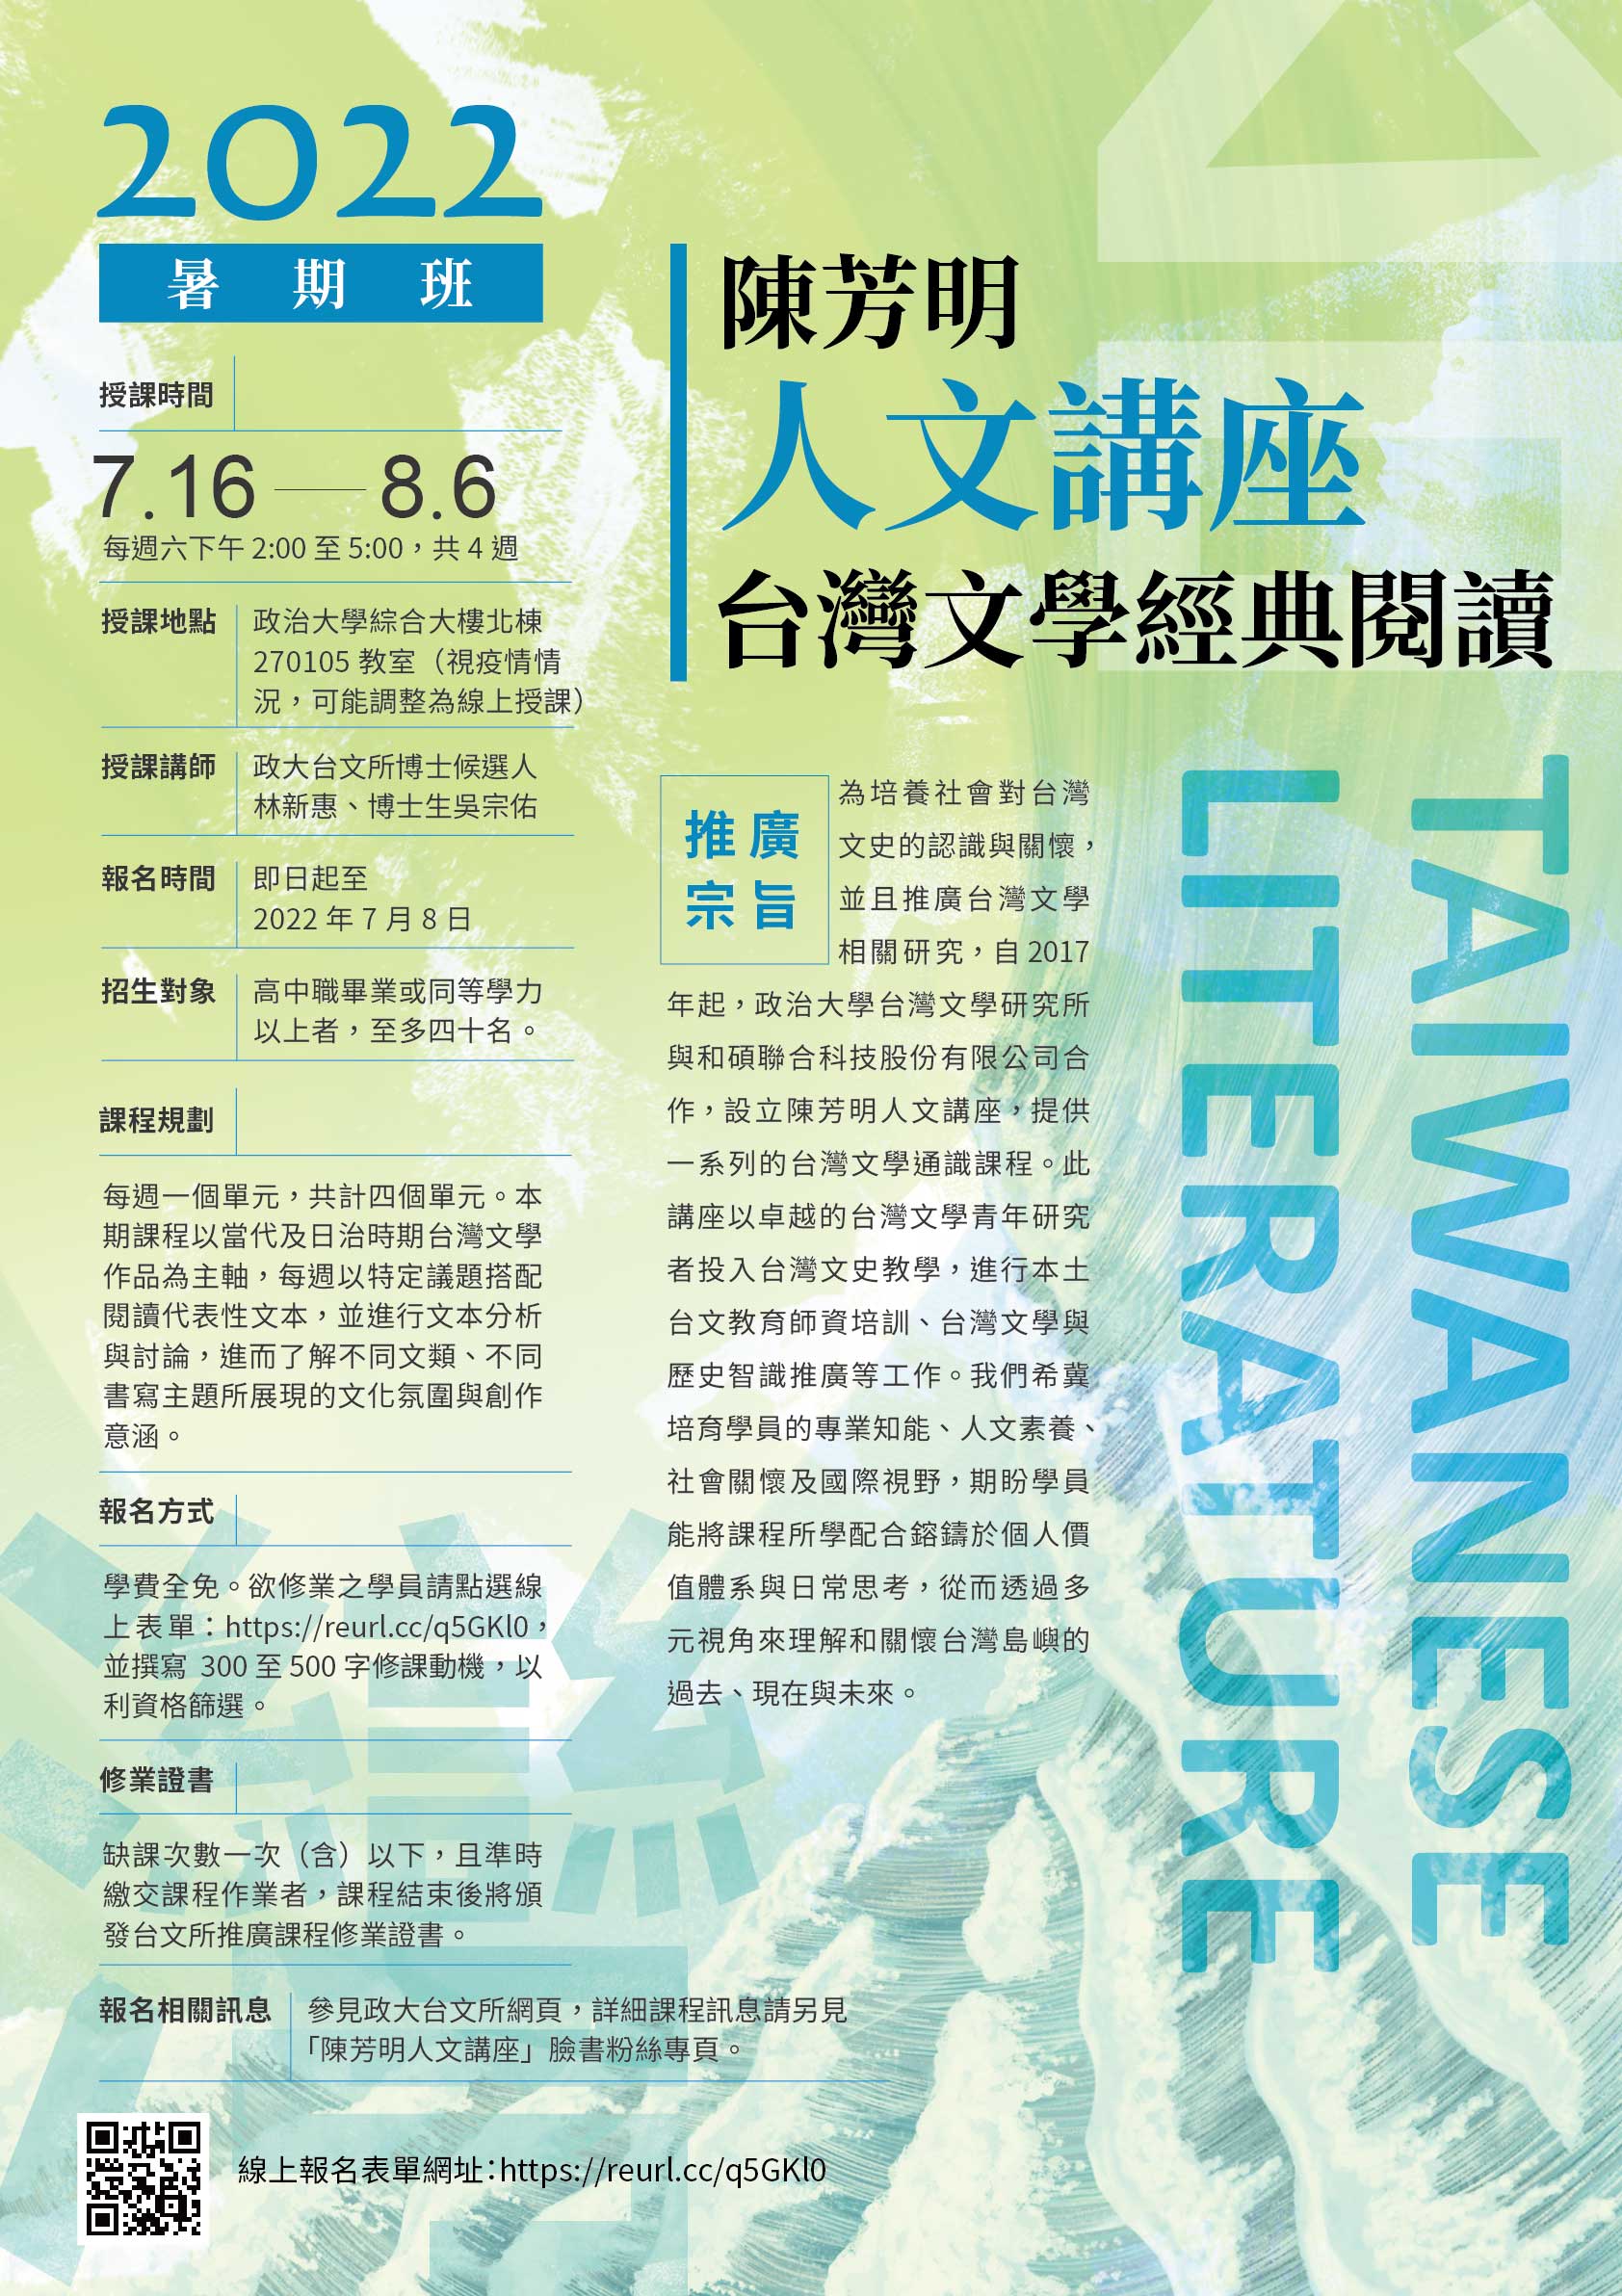 【陳芳明人文講座】「台灣文學經典閱讀」課程即日起開放報名